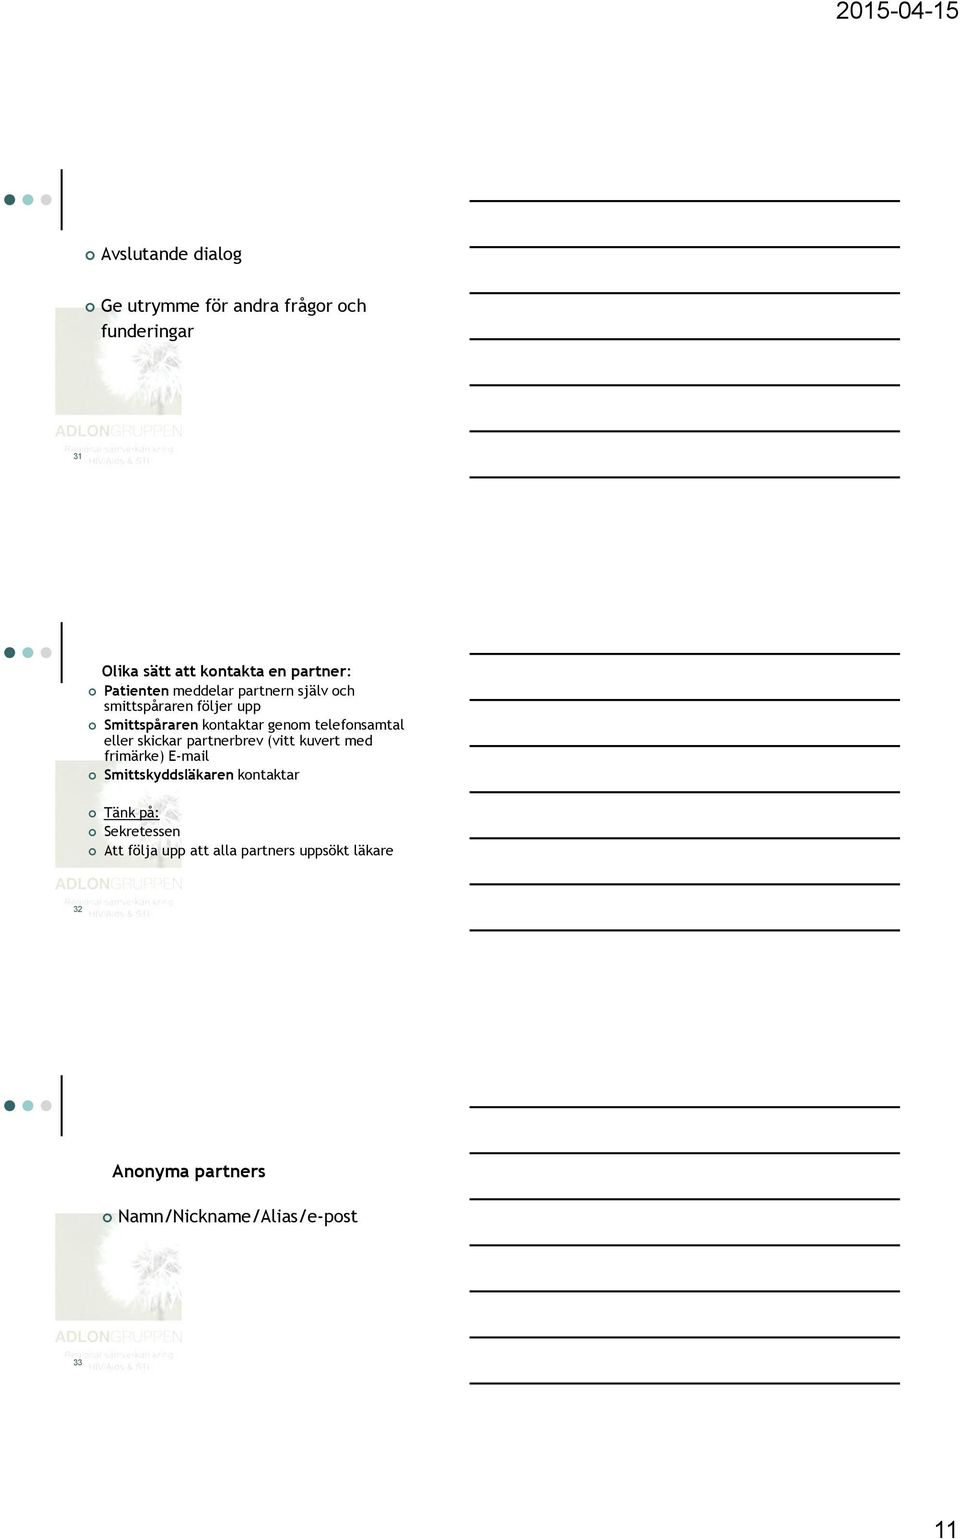 telefnsamtal eller skickar partnerbrev (vitt kuvert med frimärke) E-mail Smittskyddsläkaren kntaktar